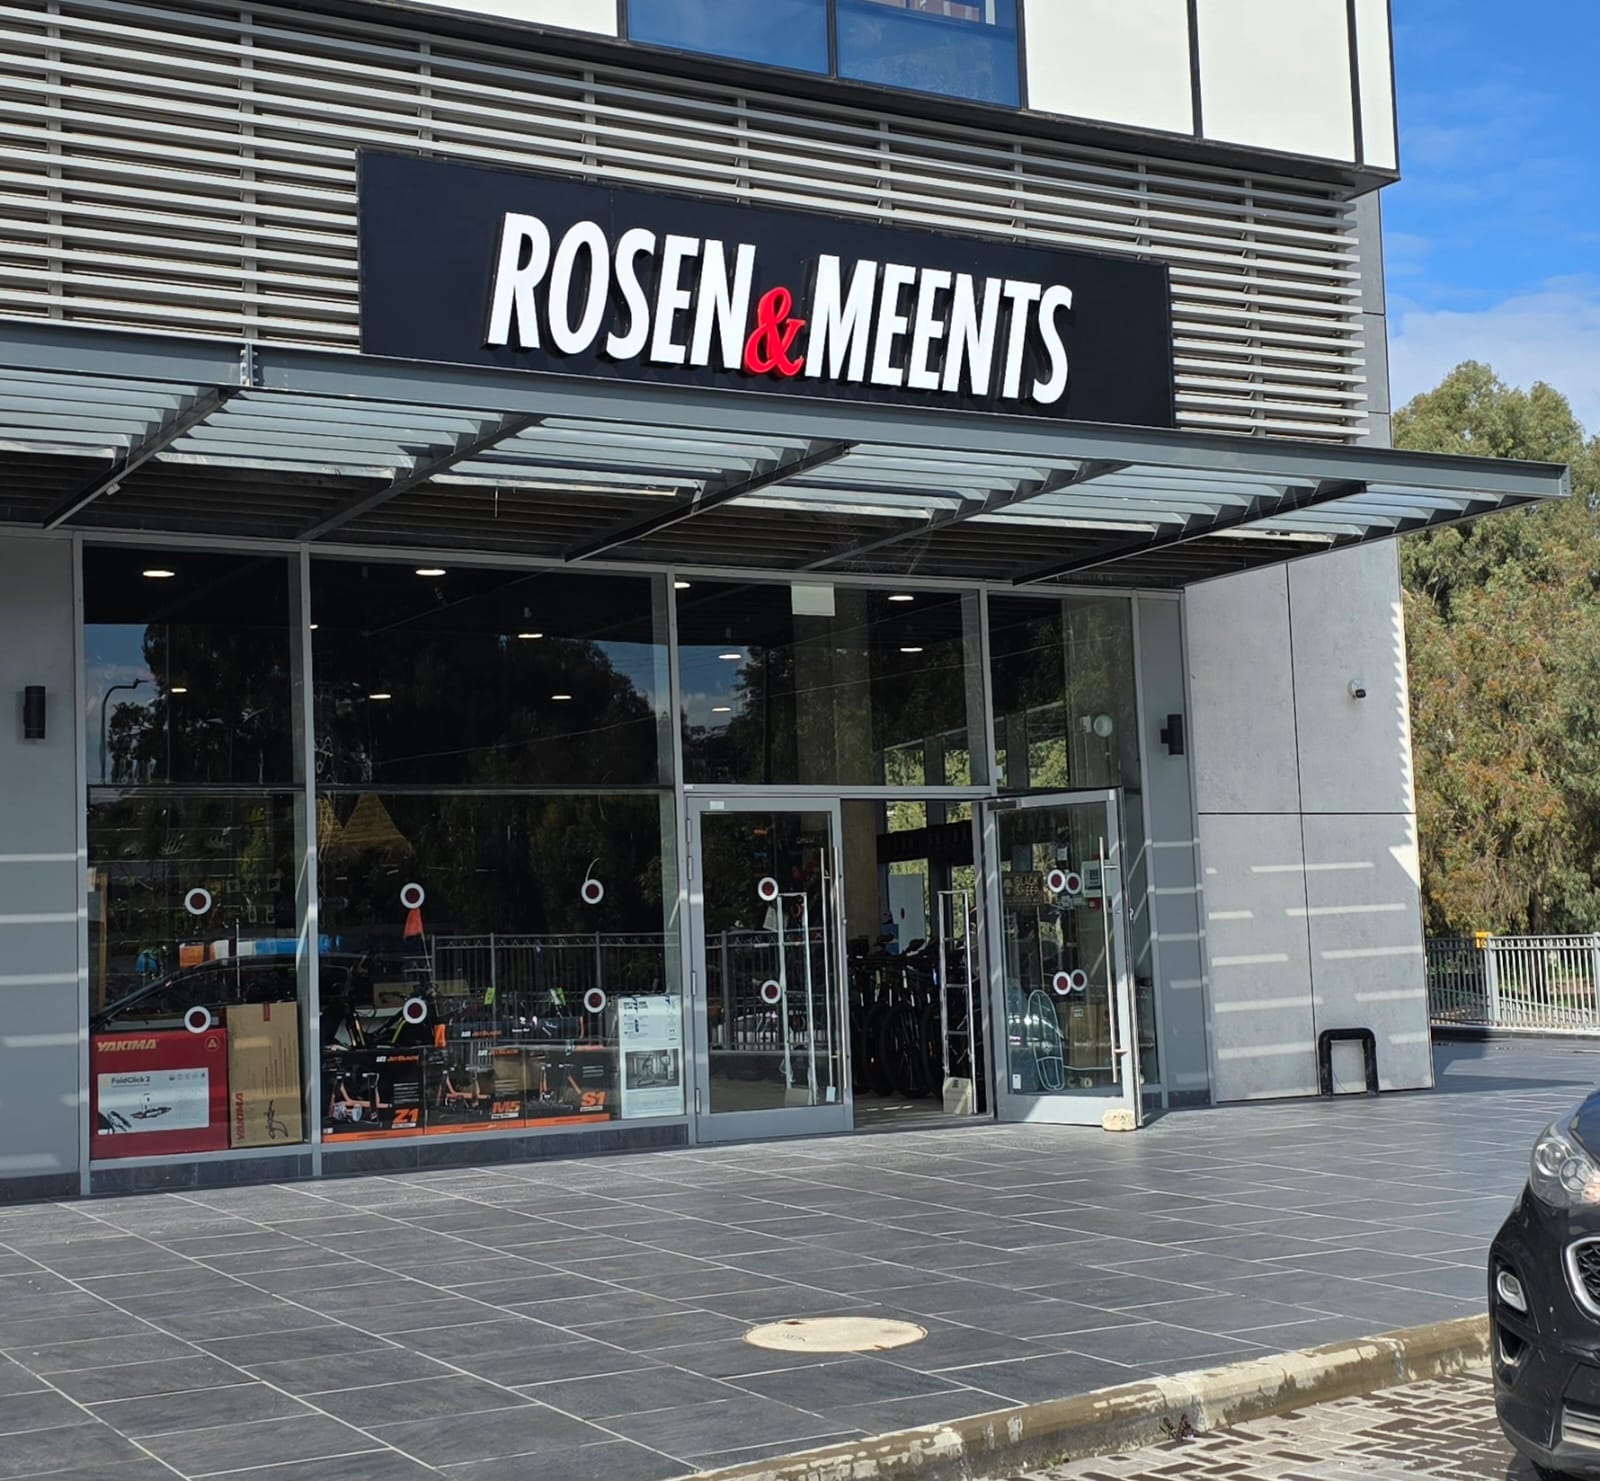 Rosen & Meents bike shop